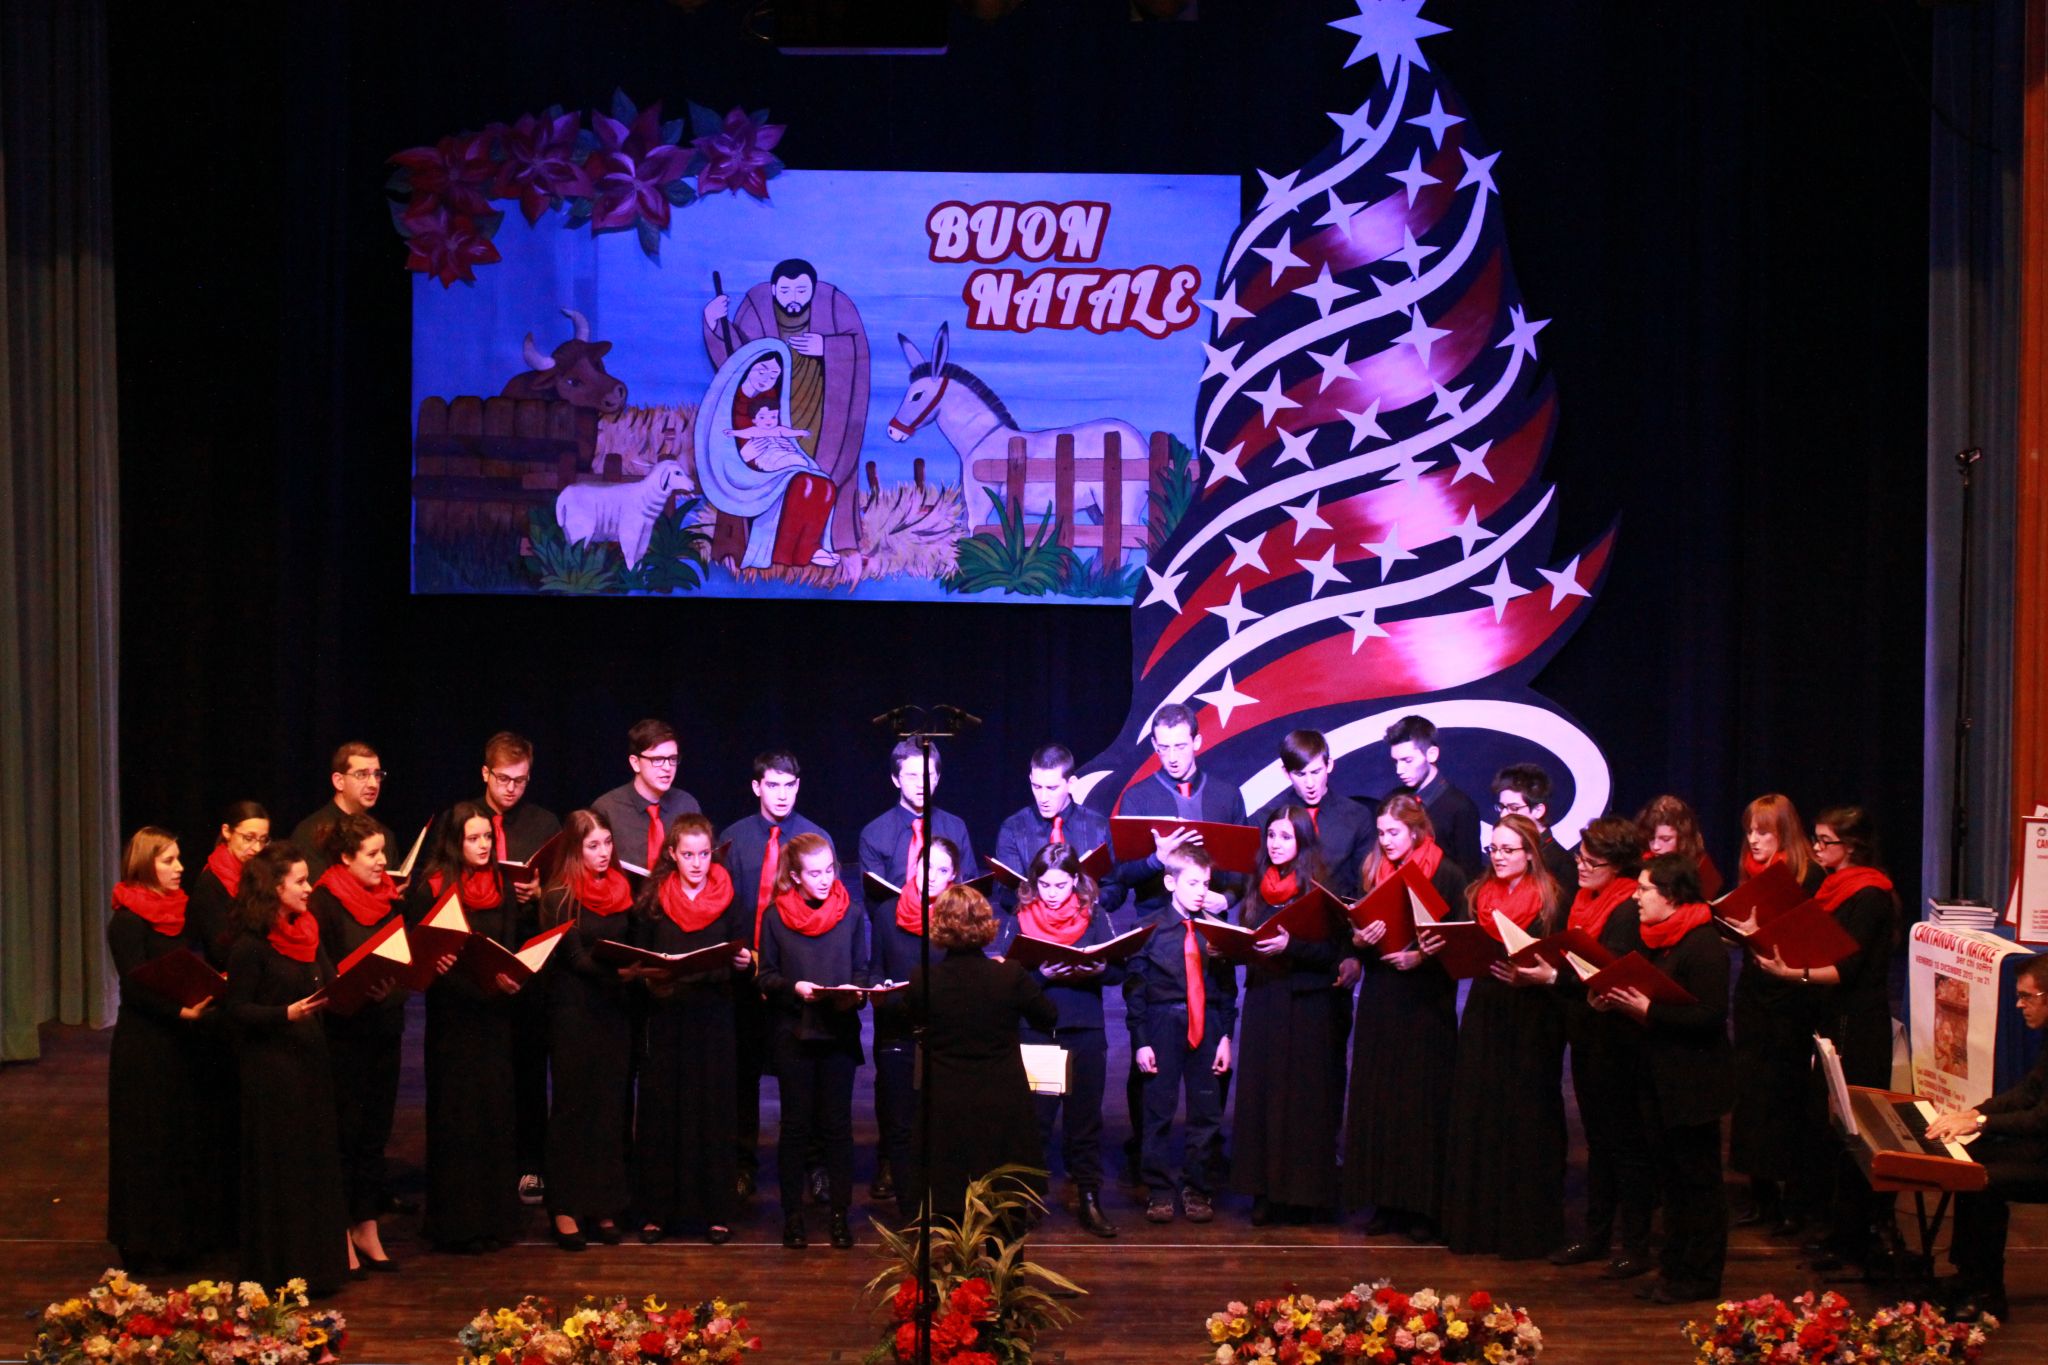 Cantando il Natale per chi soffre - 18-12-2015 - 0037.JPG